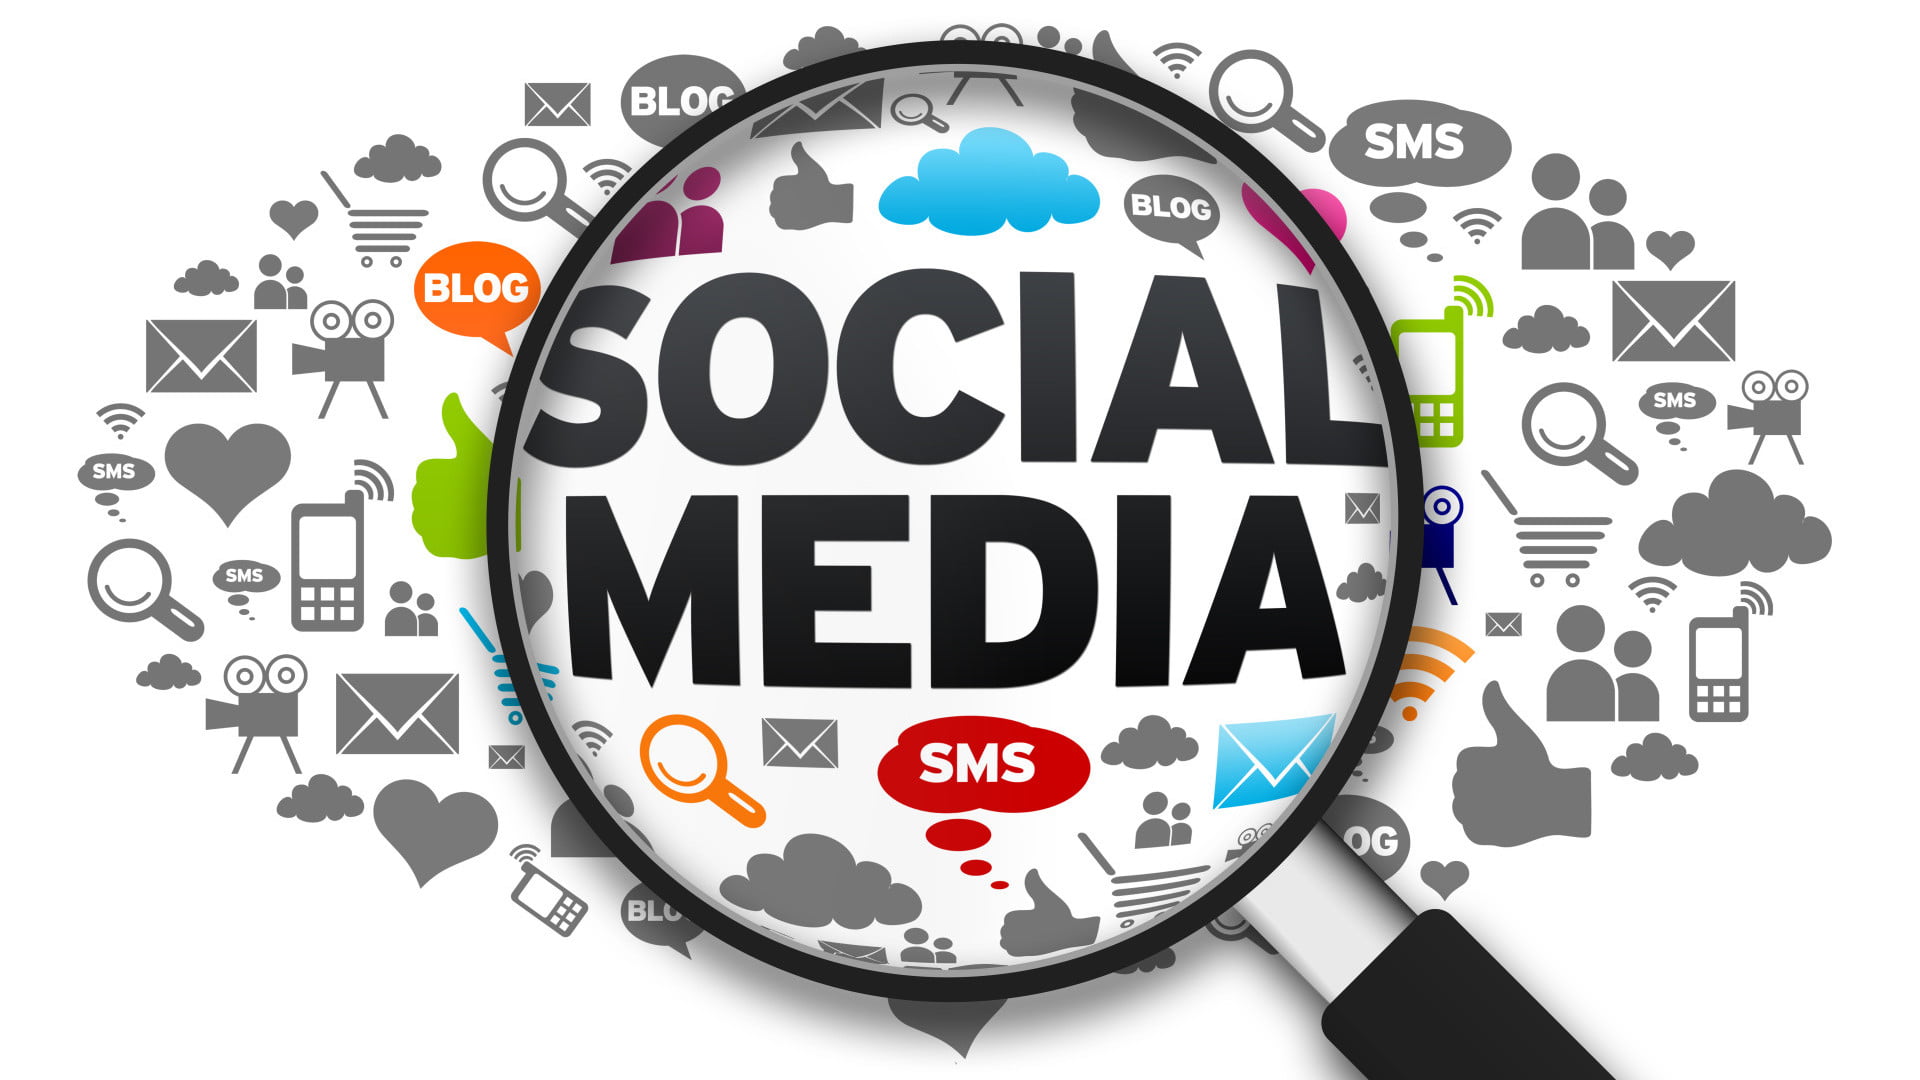 Promosi Online Mengenalkan Produk Jasa Merek dan Bisnisnya Melalui Media Sosial